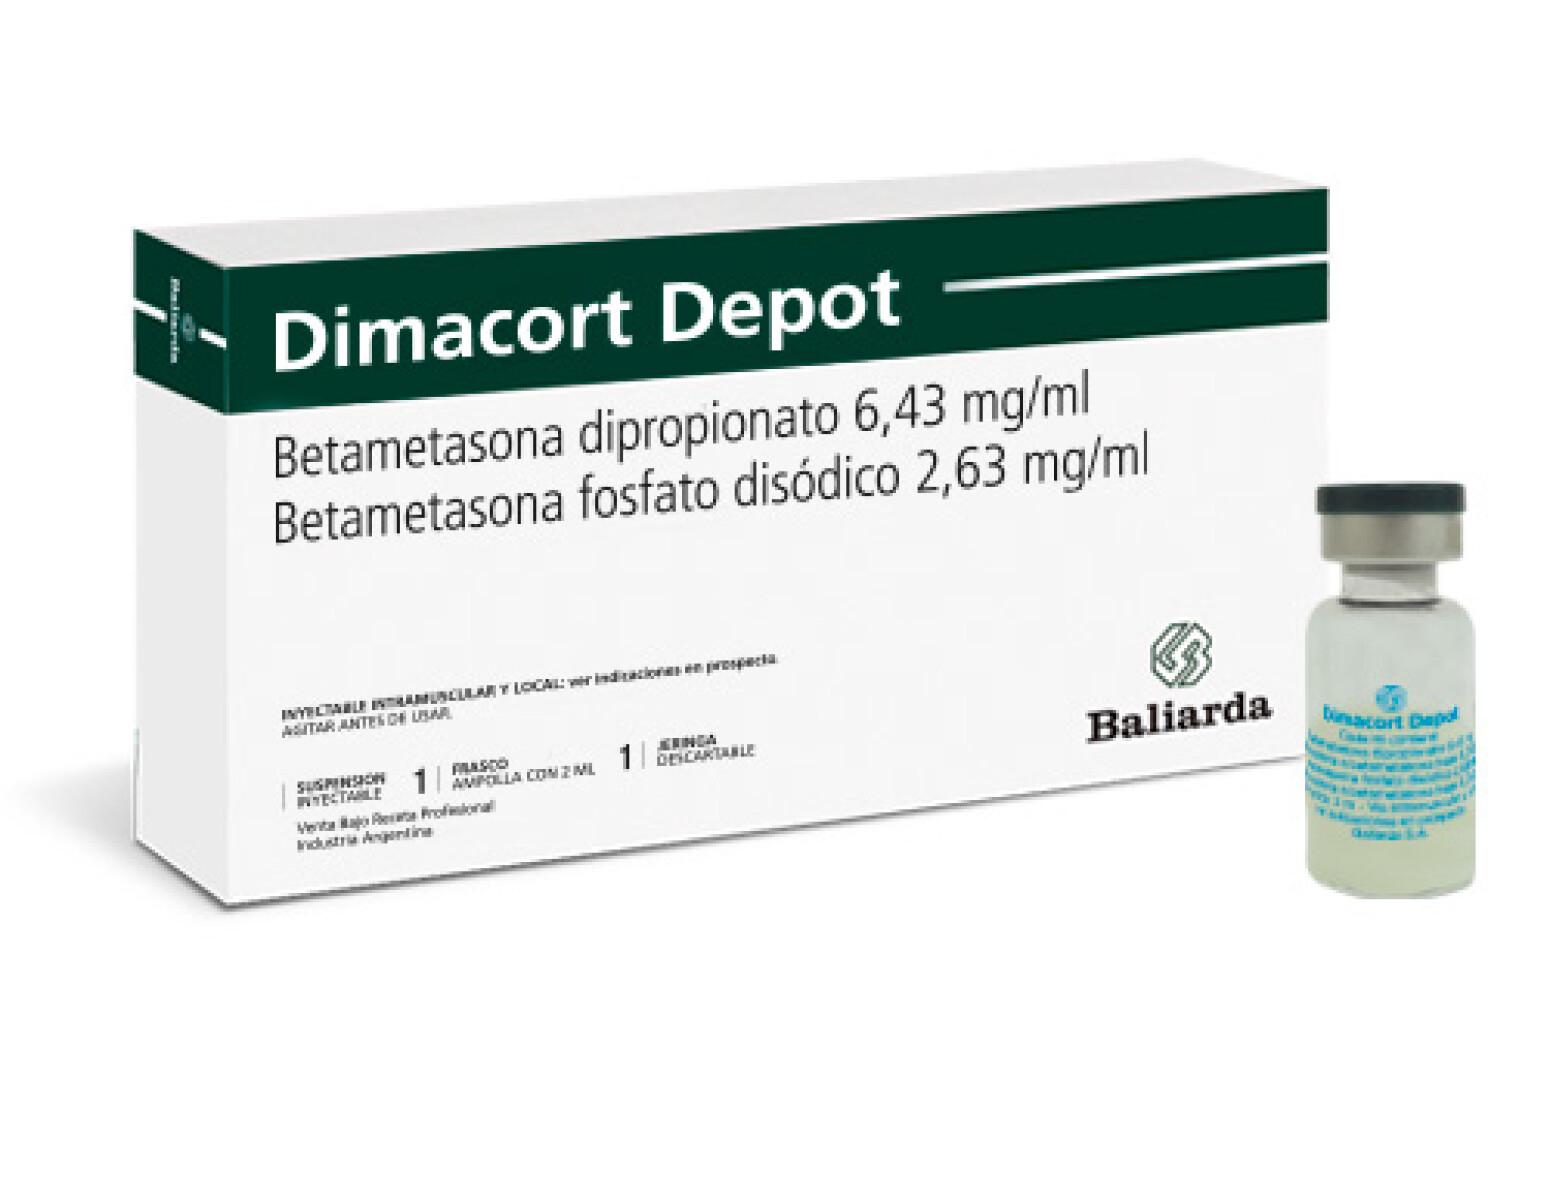 Dimacortn Depot 